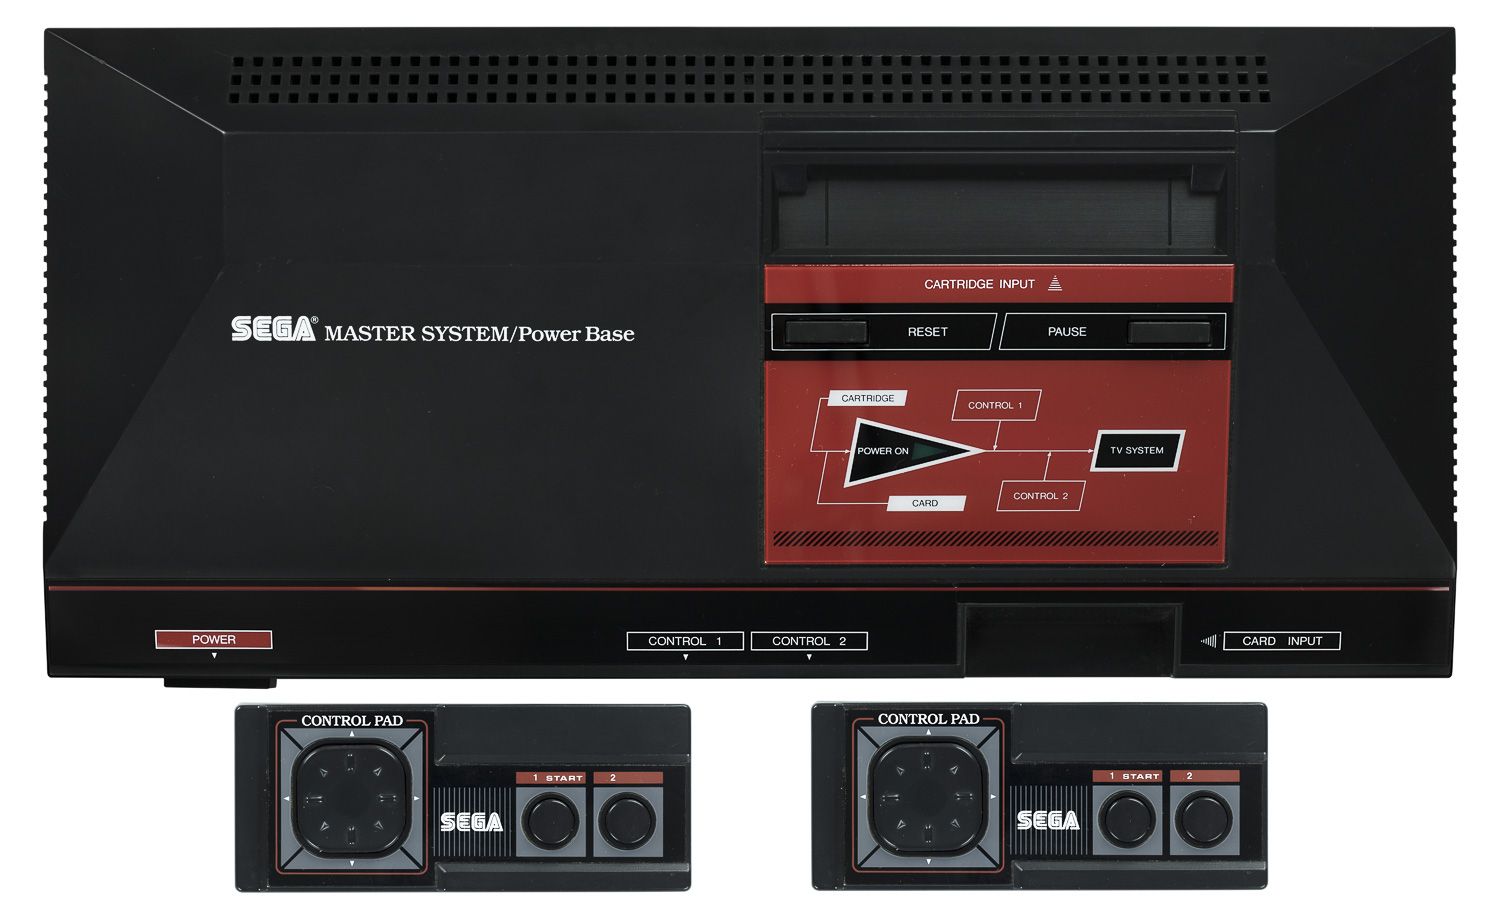 1986 - Master System